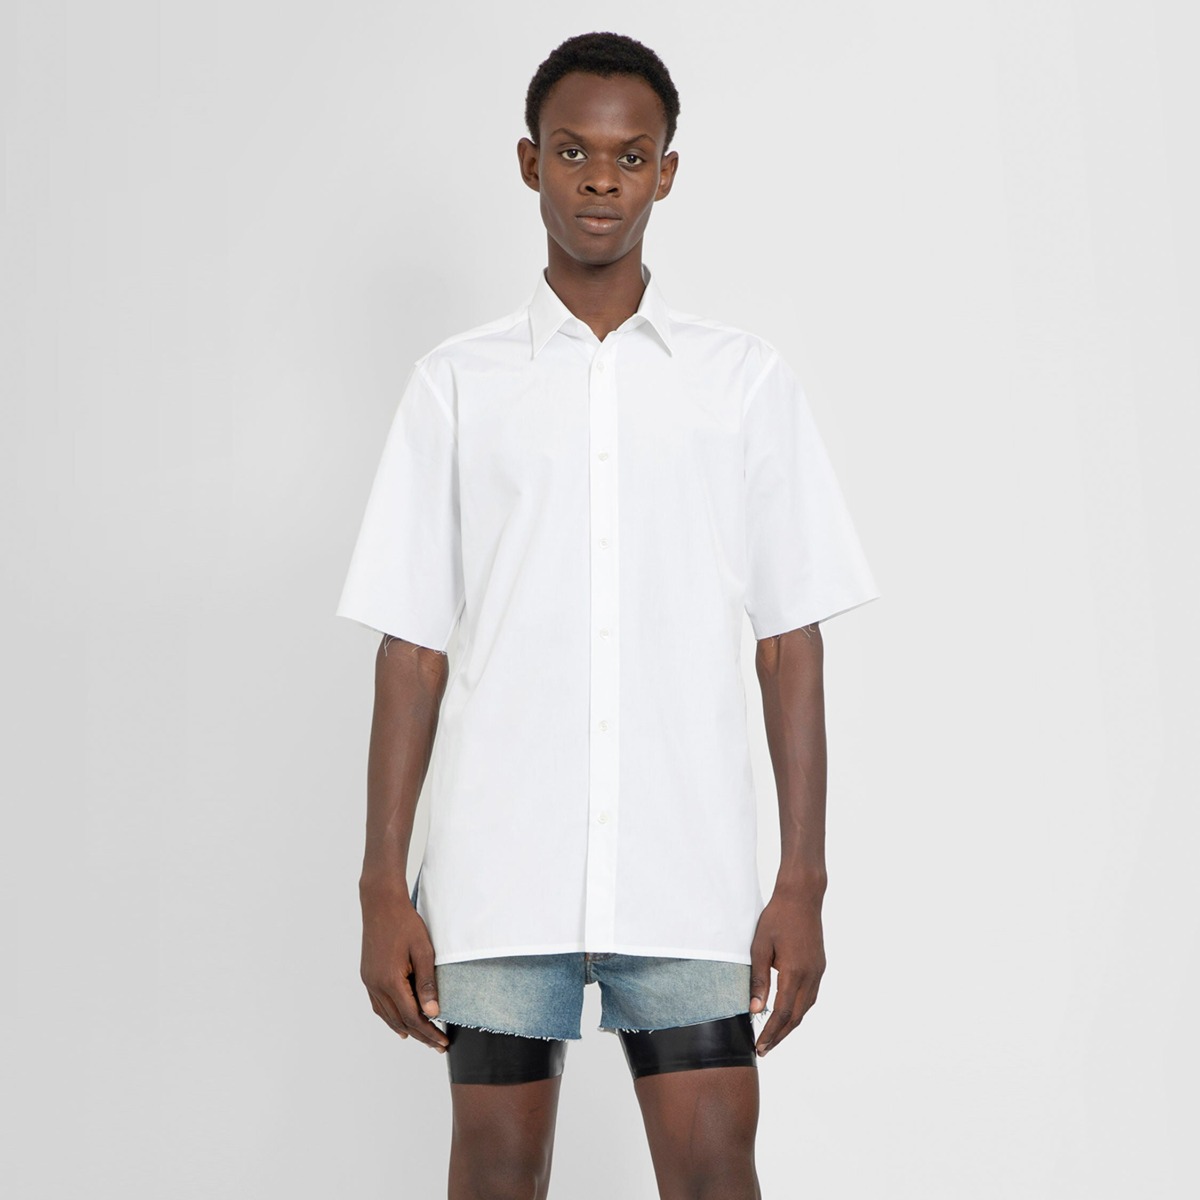 Men's White Shirt Maison Margiela Antonioli GOOFASH